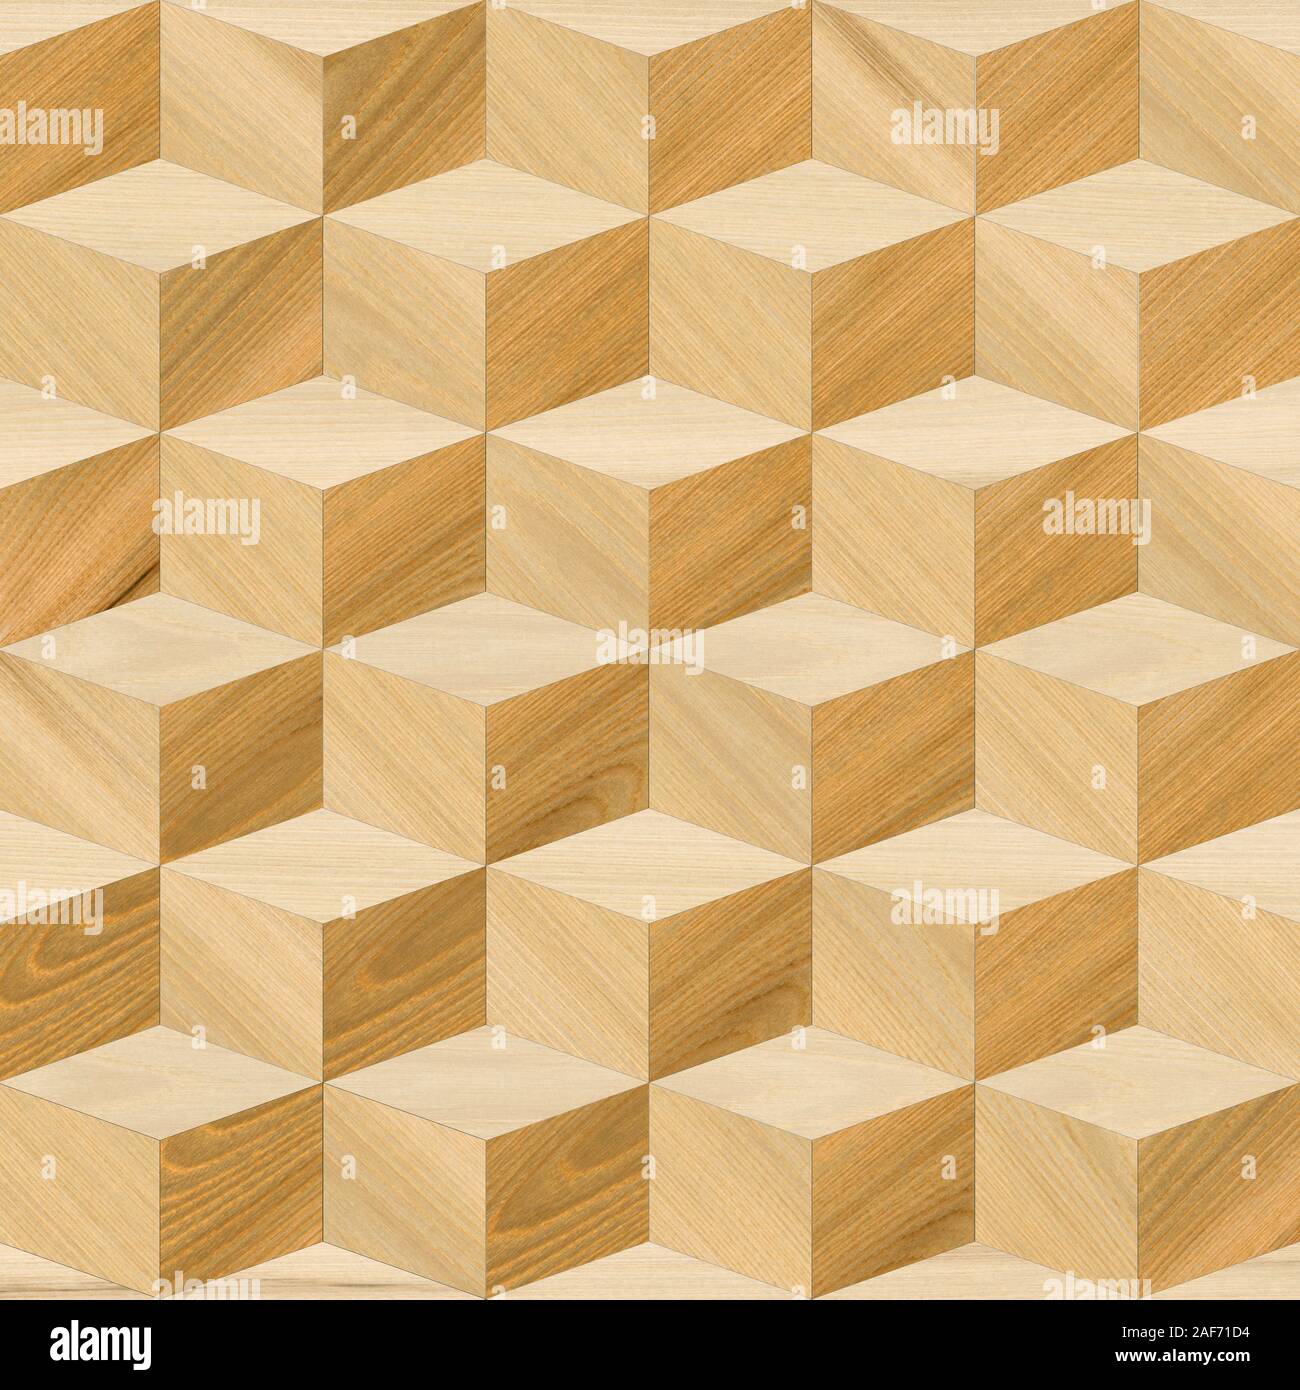 Vật liệu gỗ: Với nhiều đặc tính vượt trội về chịu lực, chống ẩm và thẩm mỹ, vật liệu gỗ được sử dụng rộng rãi trong xây dựng, nội thất và trang trí. Hình ảnh các sản phẩm được chế tác từ gỗ sẽ khiến bạn cảm thấy độc đáo và tuyệt vời.